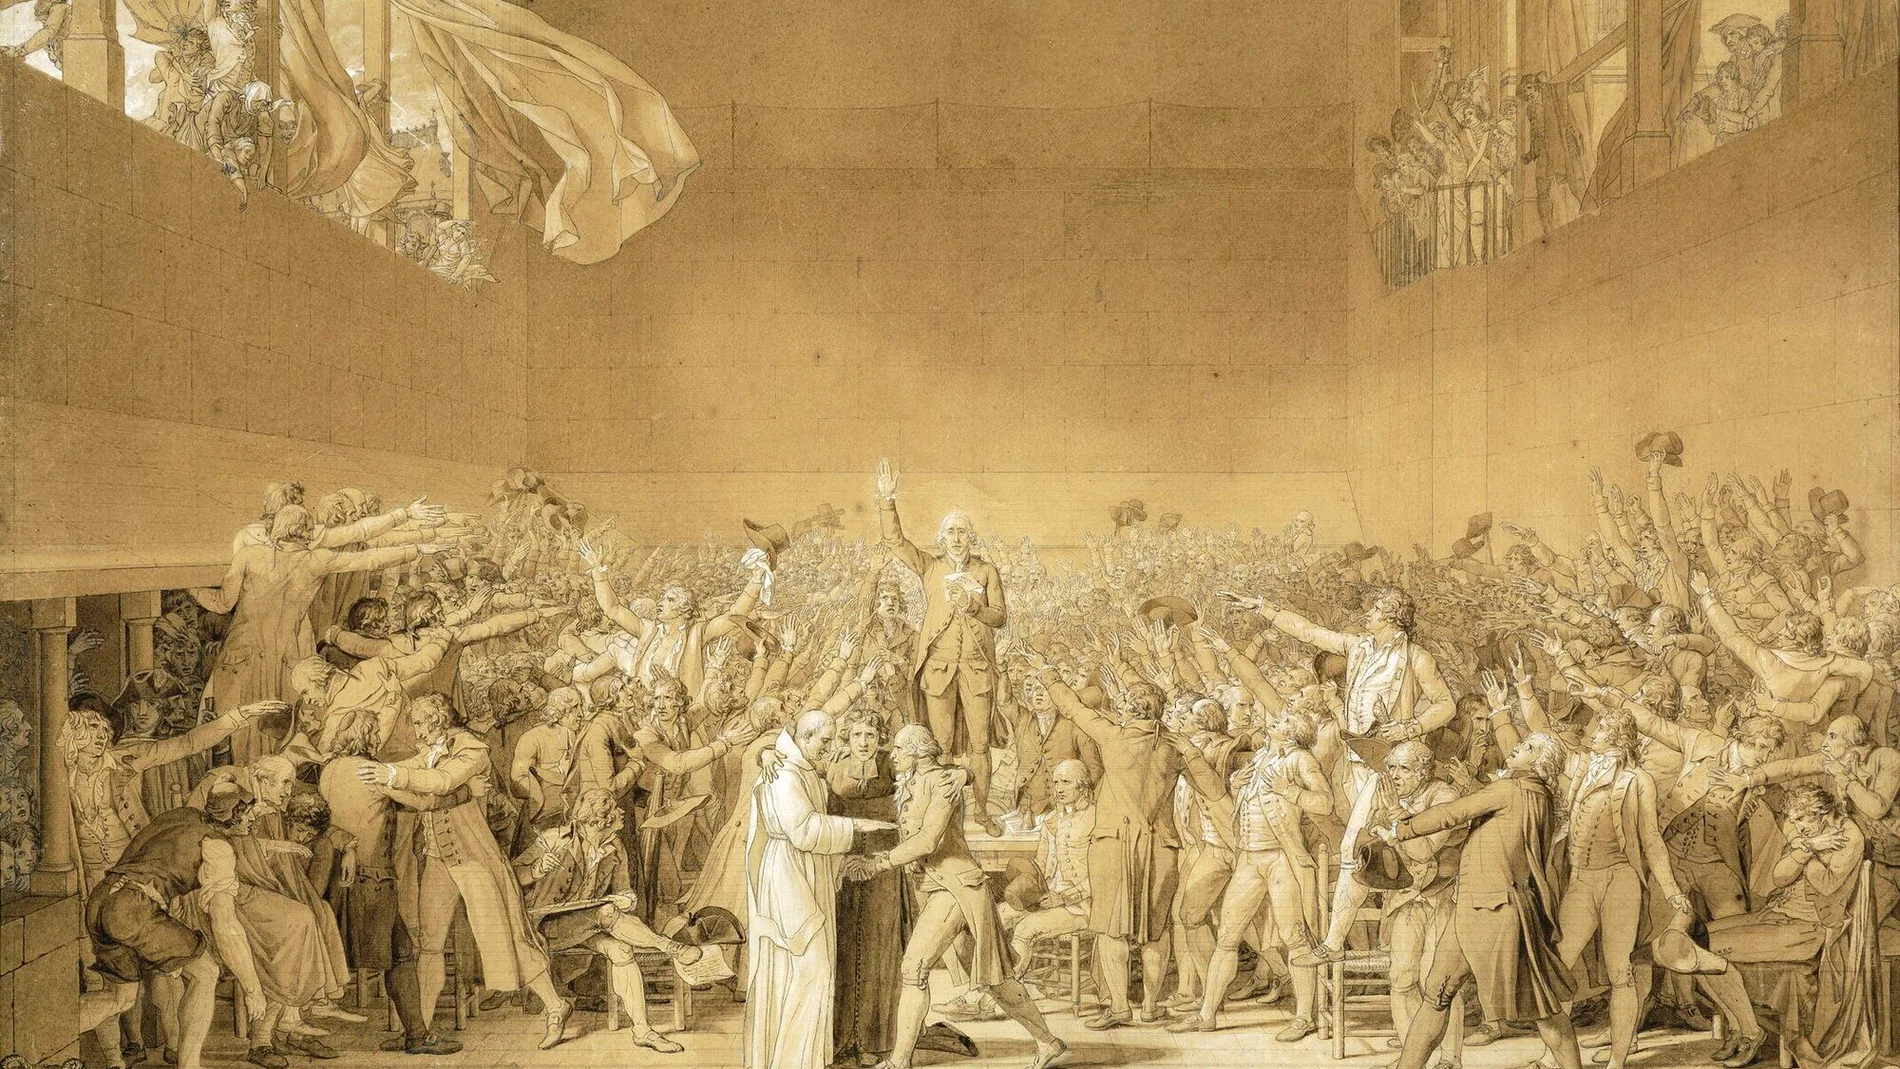 Cuadro de Jacques-Louis David sobre el "Juramento del juego de pelota"